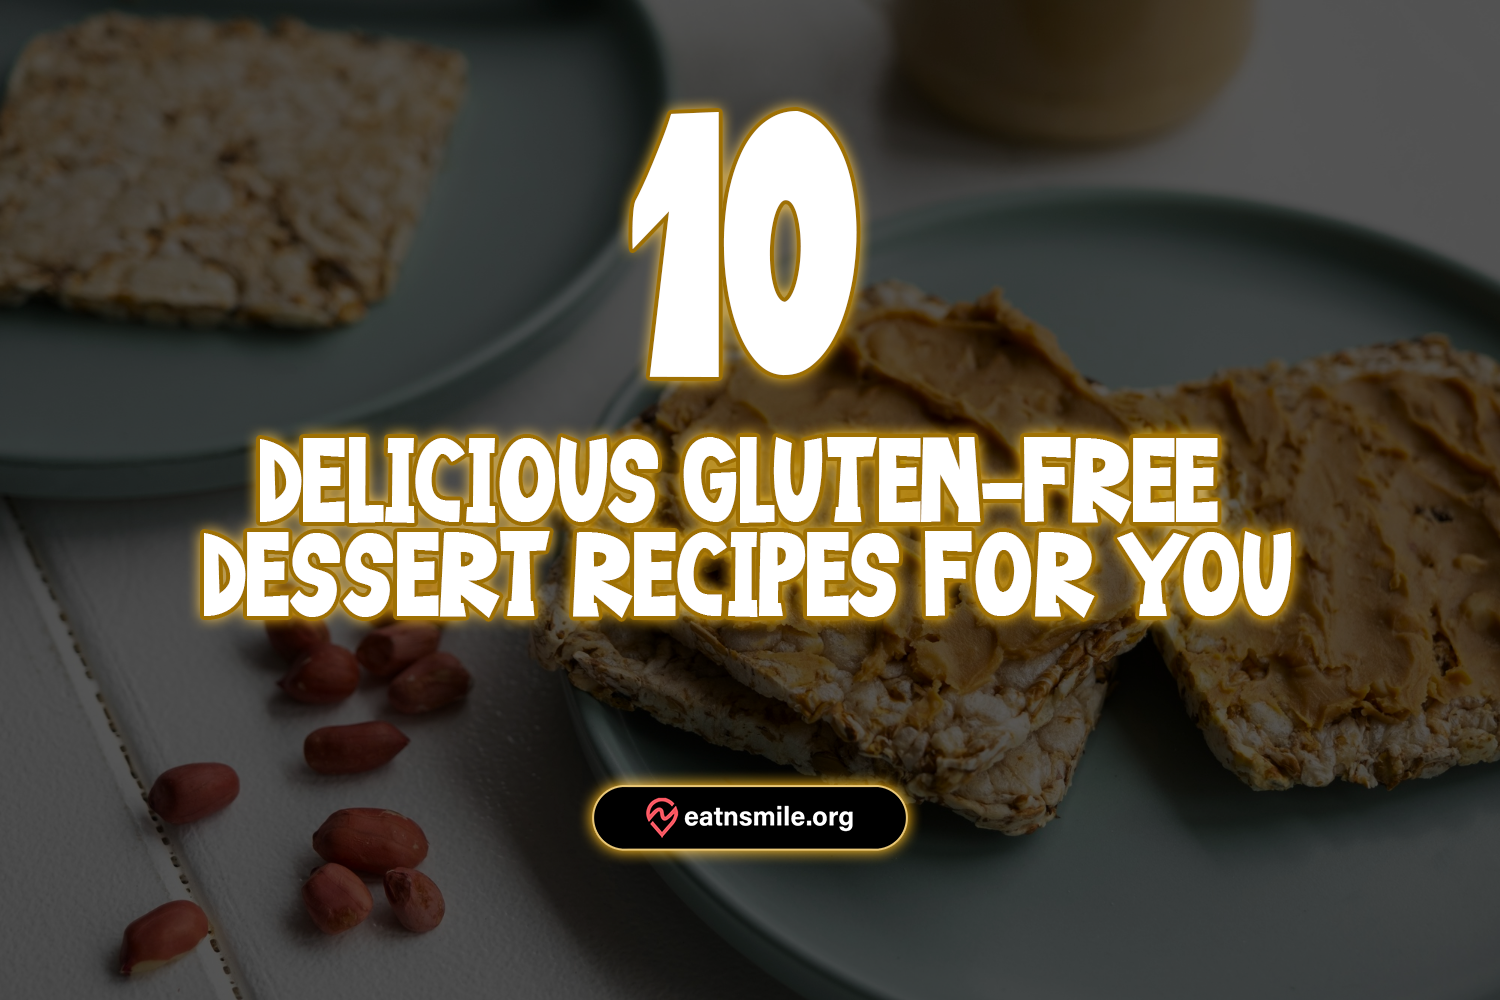 gluten-free dessert recipes thumb